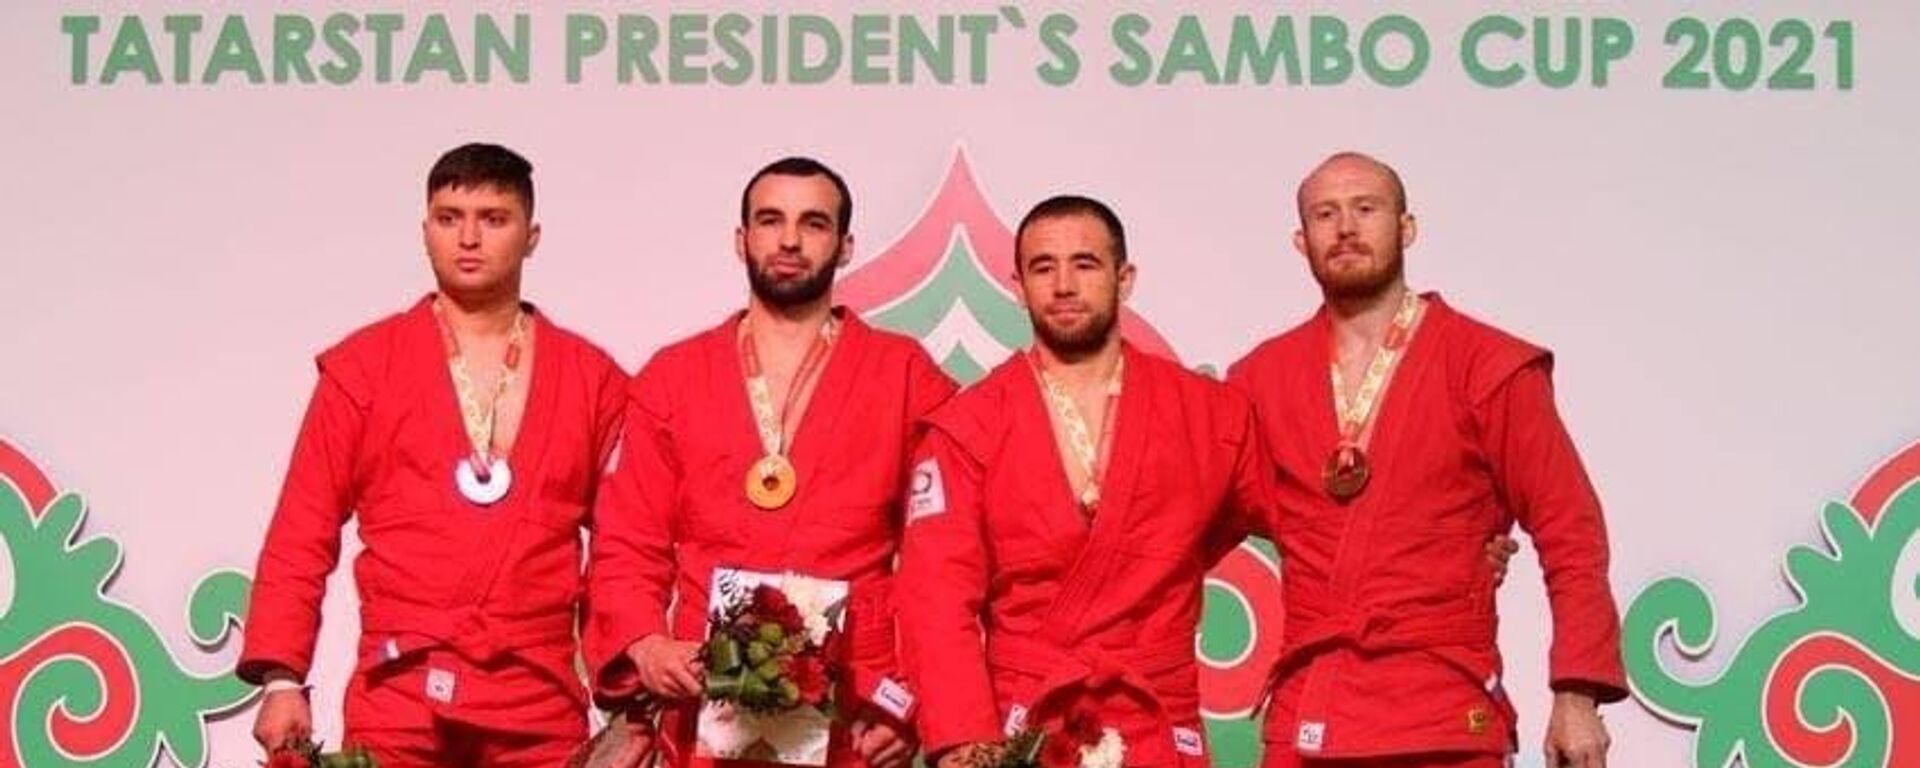 Узбекистанские самбисты завоевали три медали на международном турнире в Казани - Sputnik Узбекистан, 1920, 07.10.2021